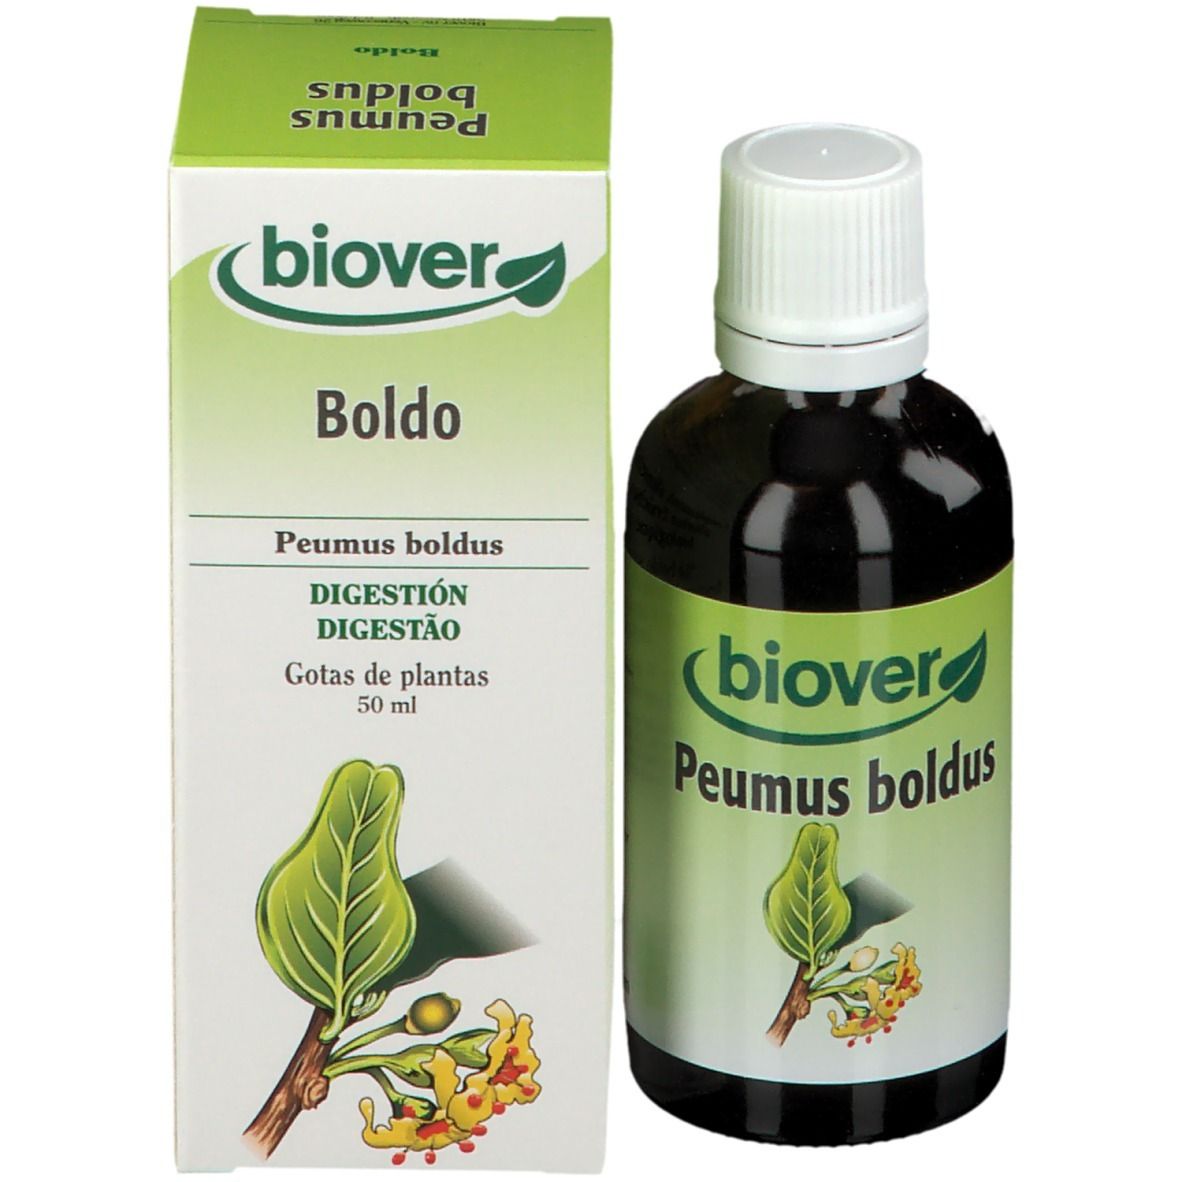 biover-boldo-peumus-boldus-teinture-mere-bio-teinture-BE01680545-p16